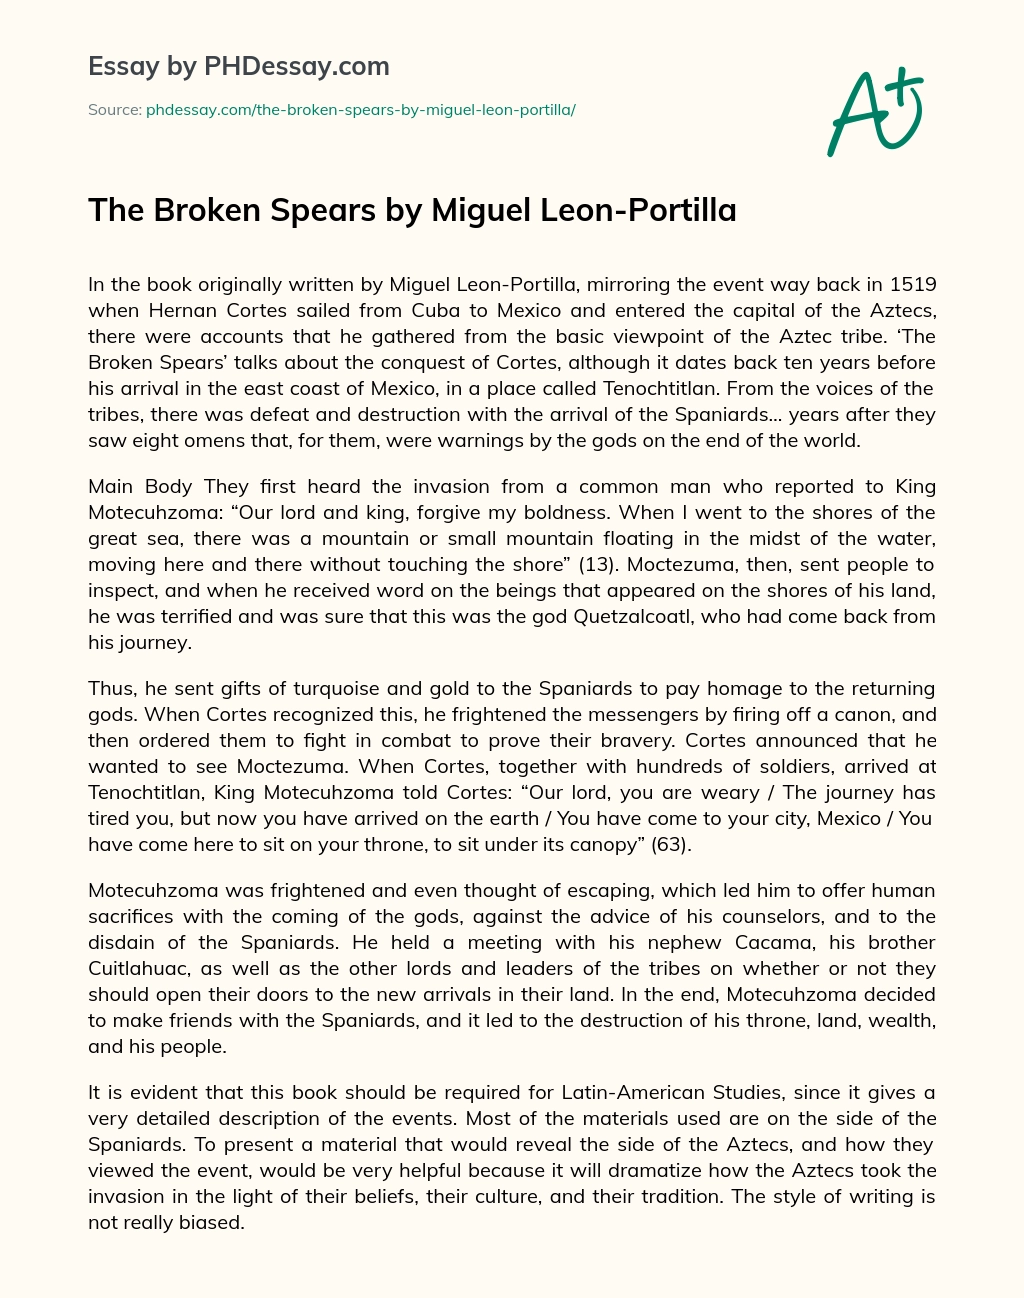 The Broken Spears by Miguel Leon-Portilla essay